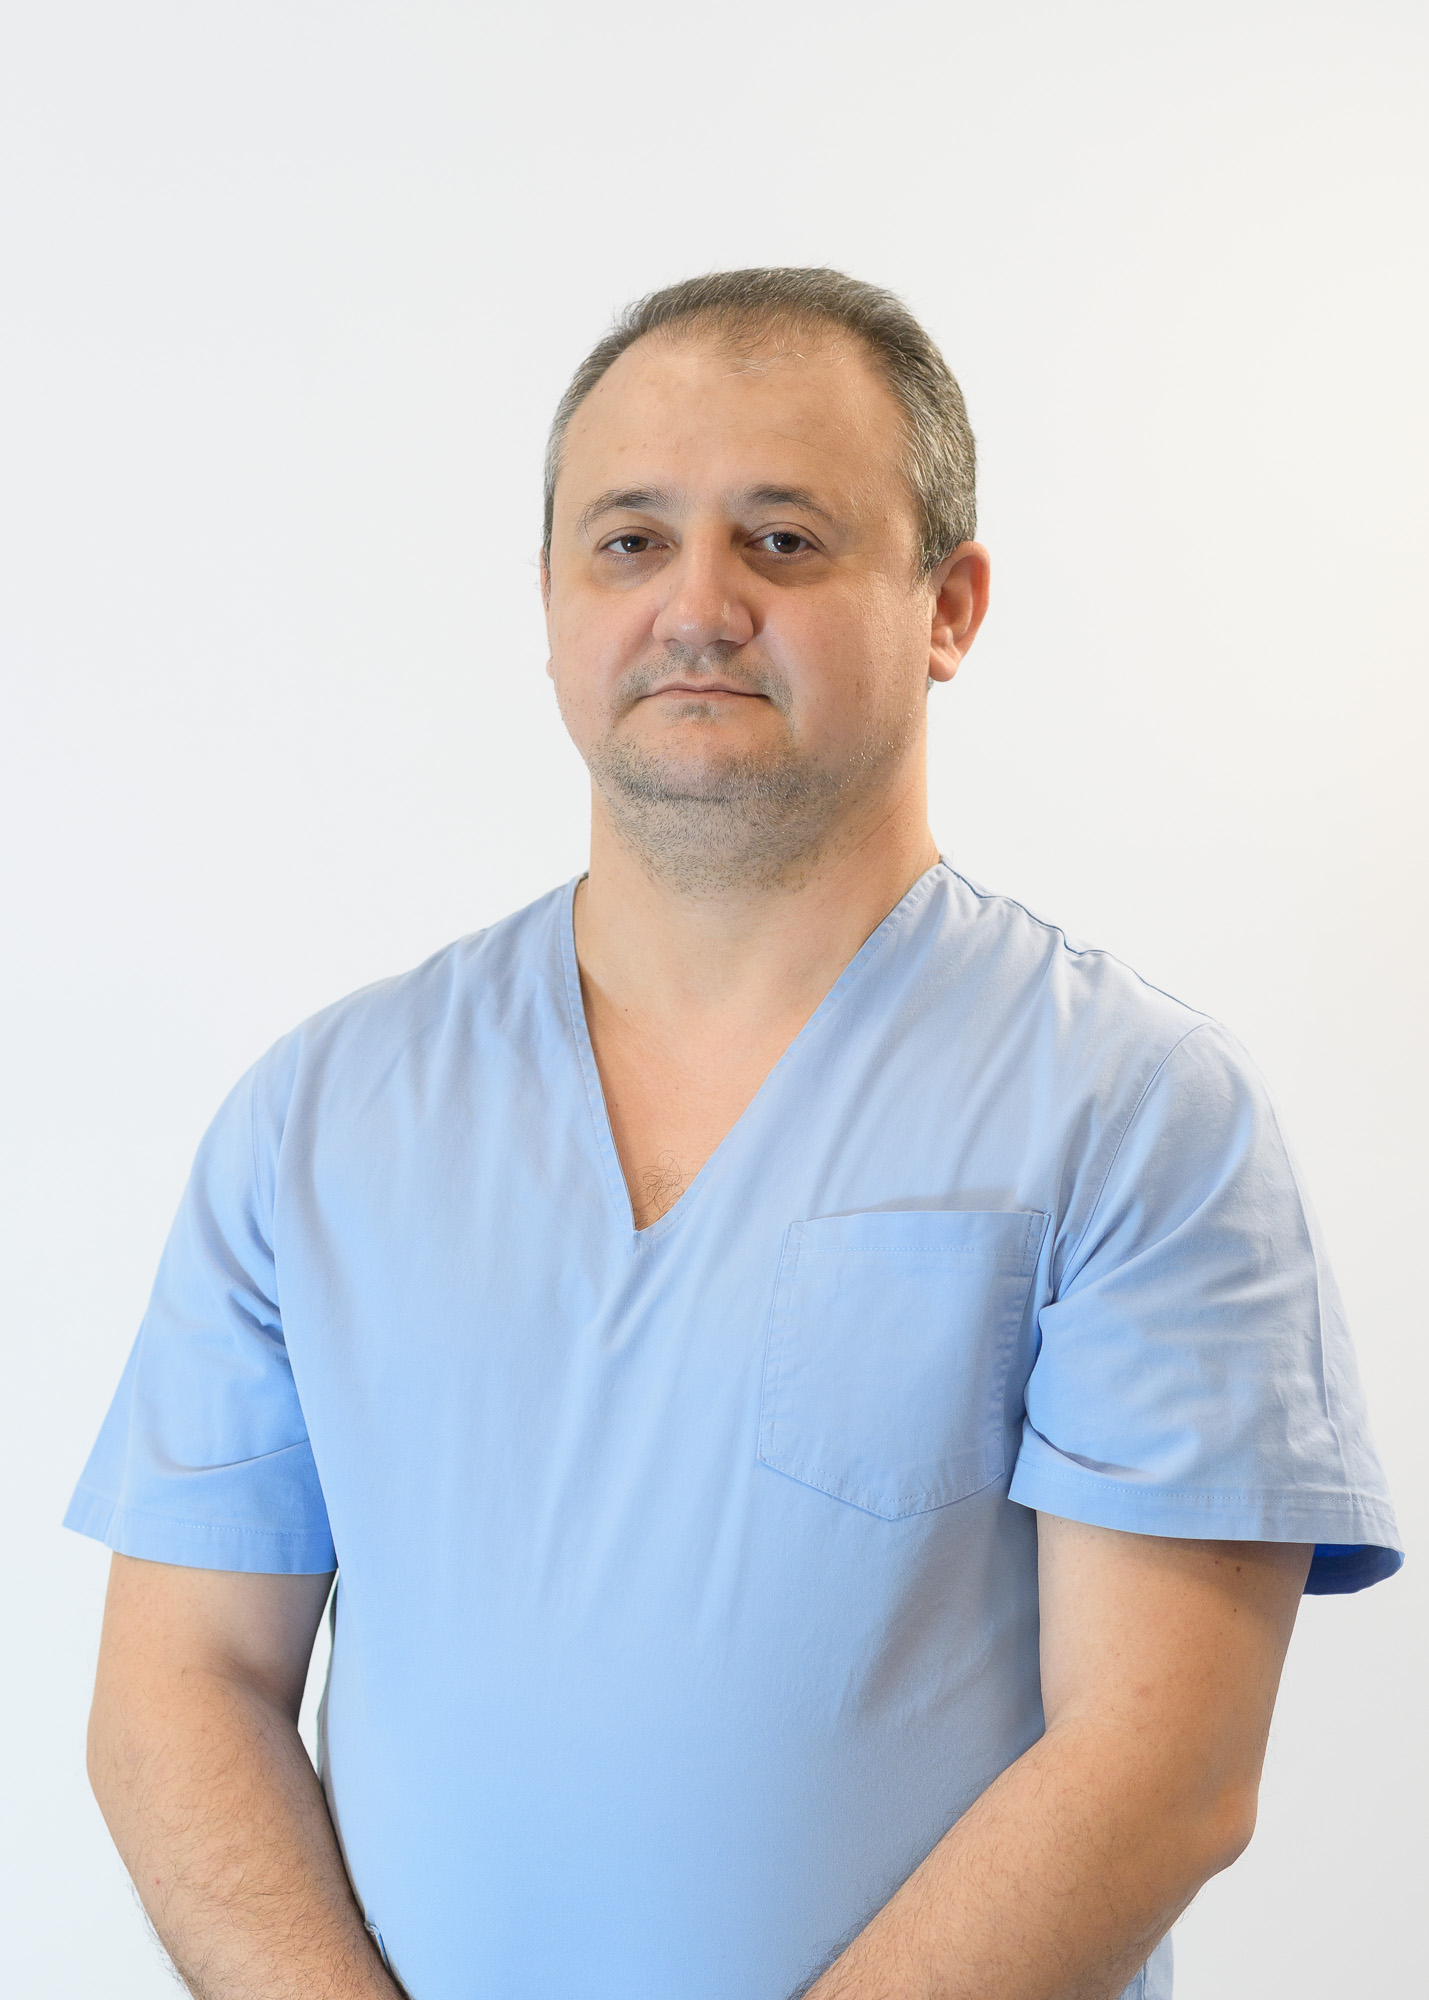 Dr.  Ștefan Alexandru Filipoiu